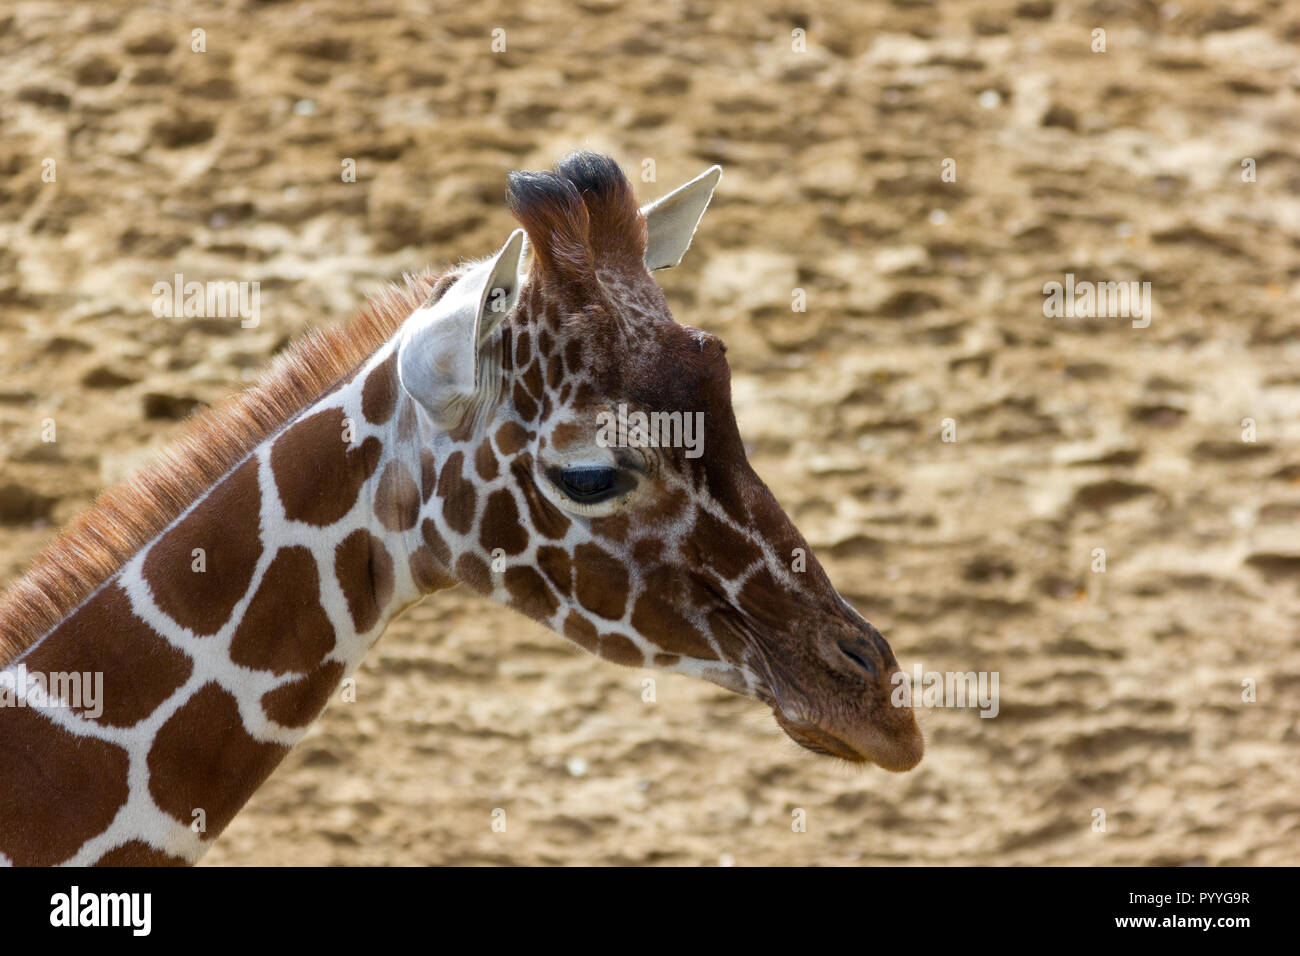 Young Giraffe (Giraffa camelopardalis) at a zoological park Stock Photo